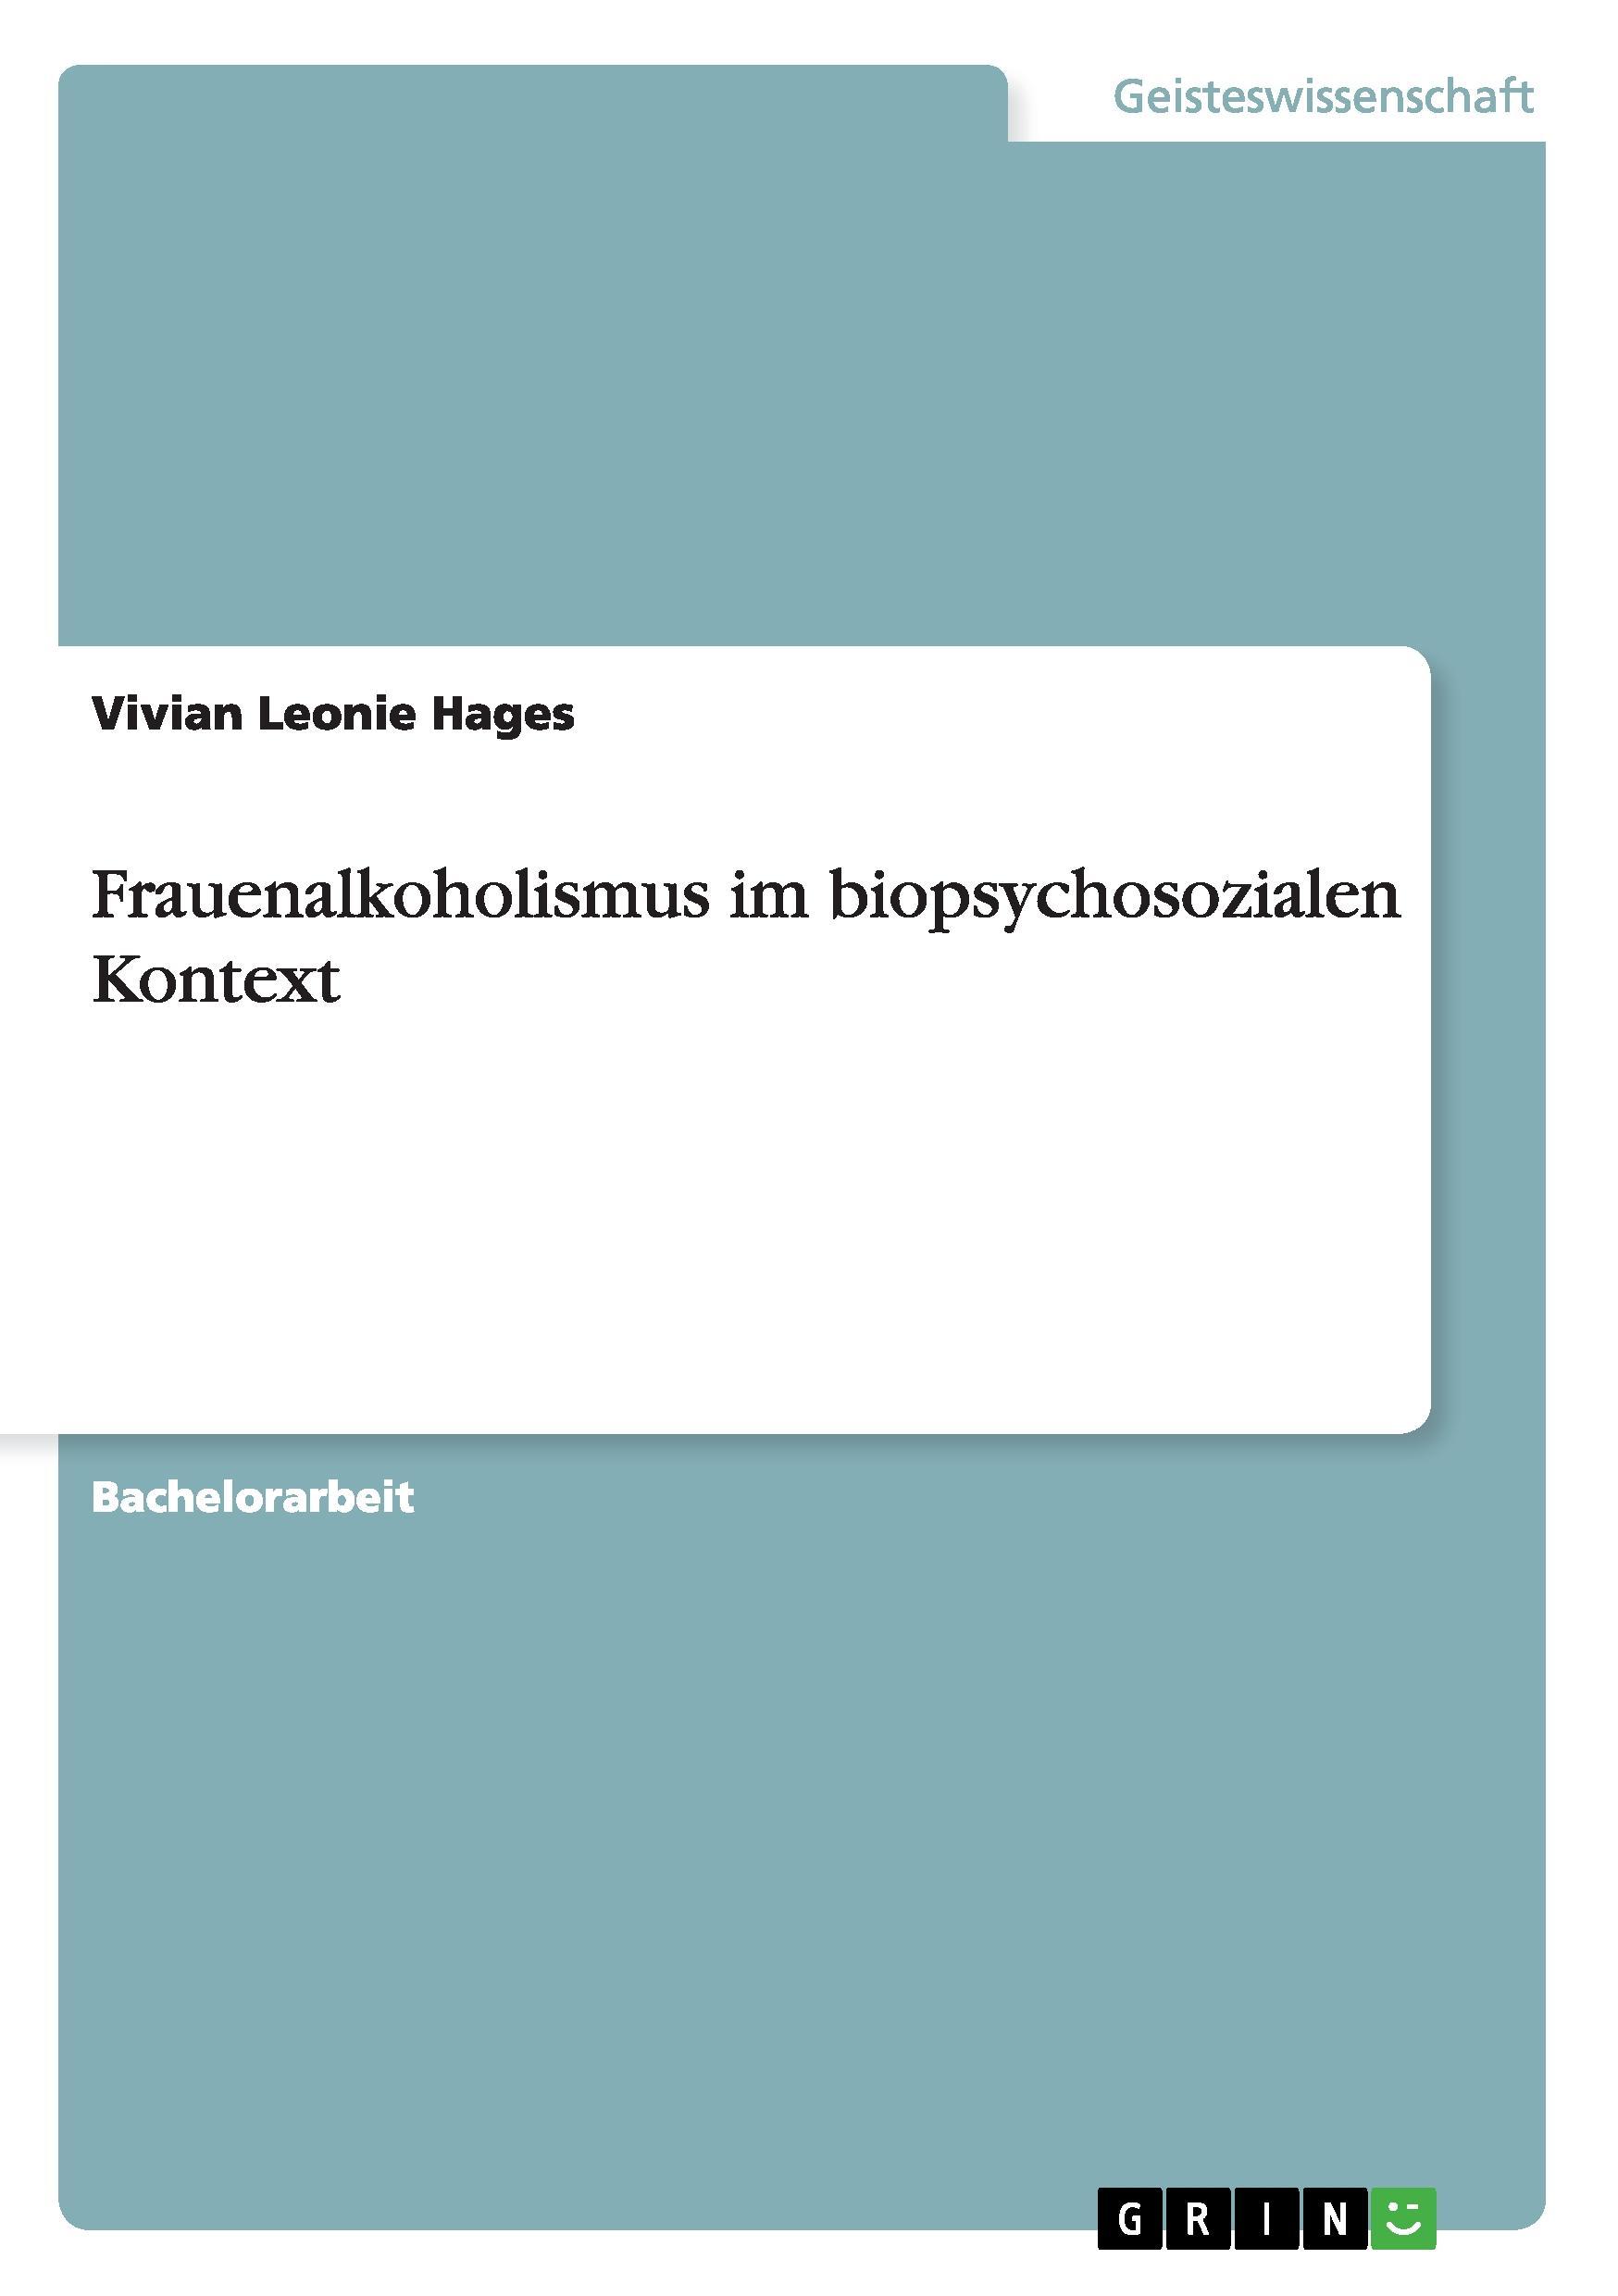 Frauenalkoholismus im biopsychosozialen Kontext - Hages, Vivian Leonie